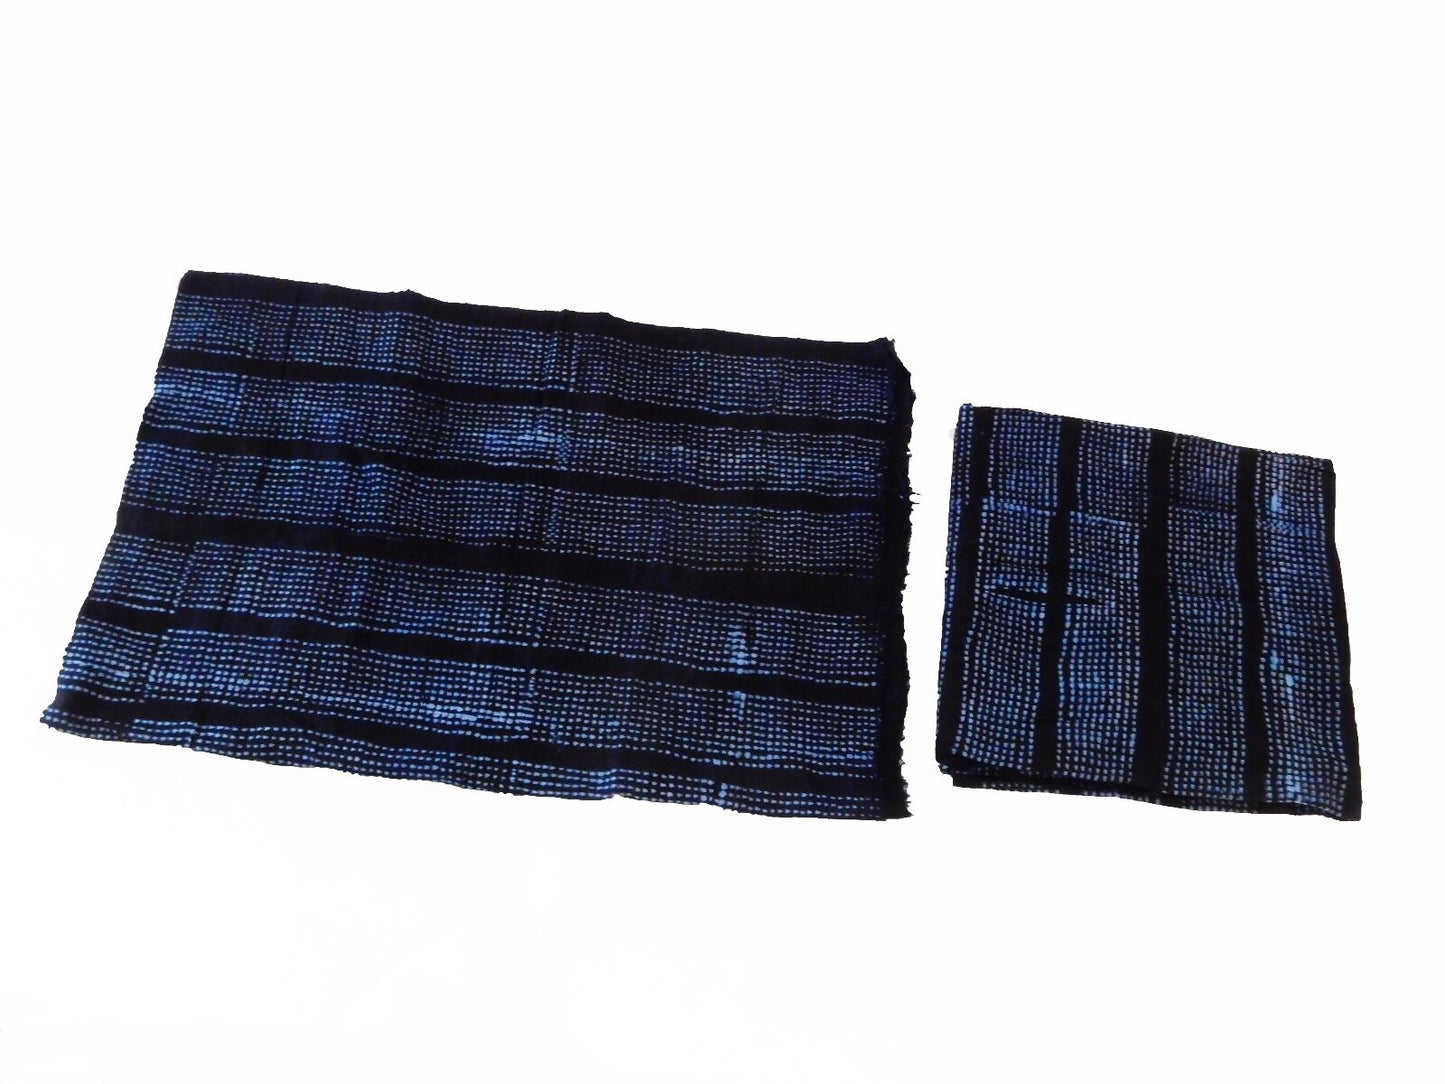 Malian Indigo Mud Cloth Textiles S/2 40" by 62" # 4